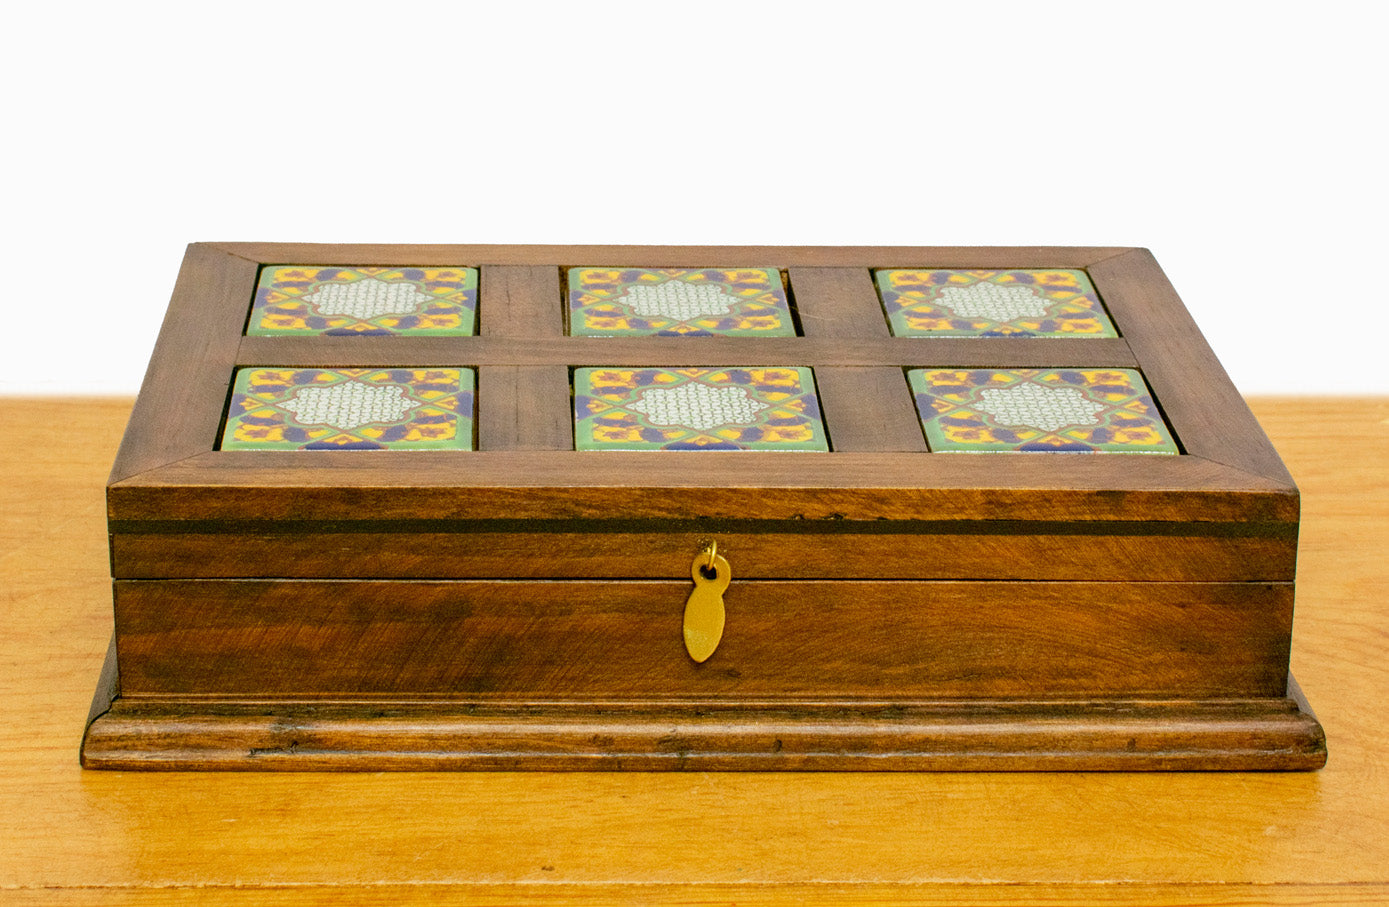 Caja de madera 6 azulejos